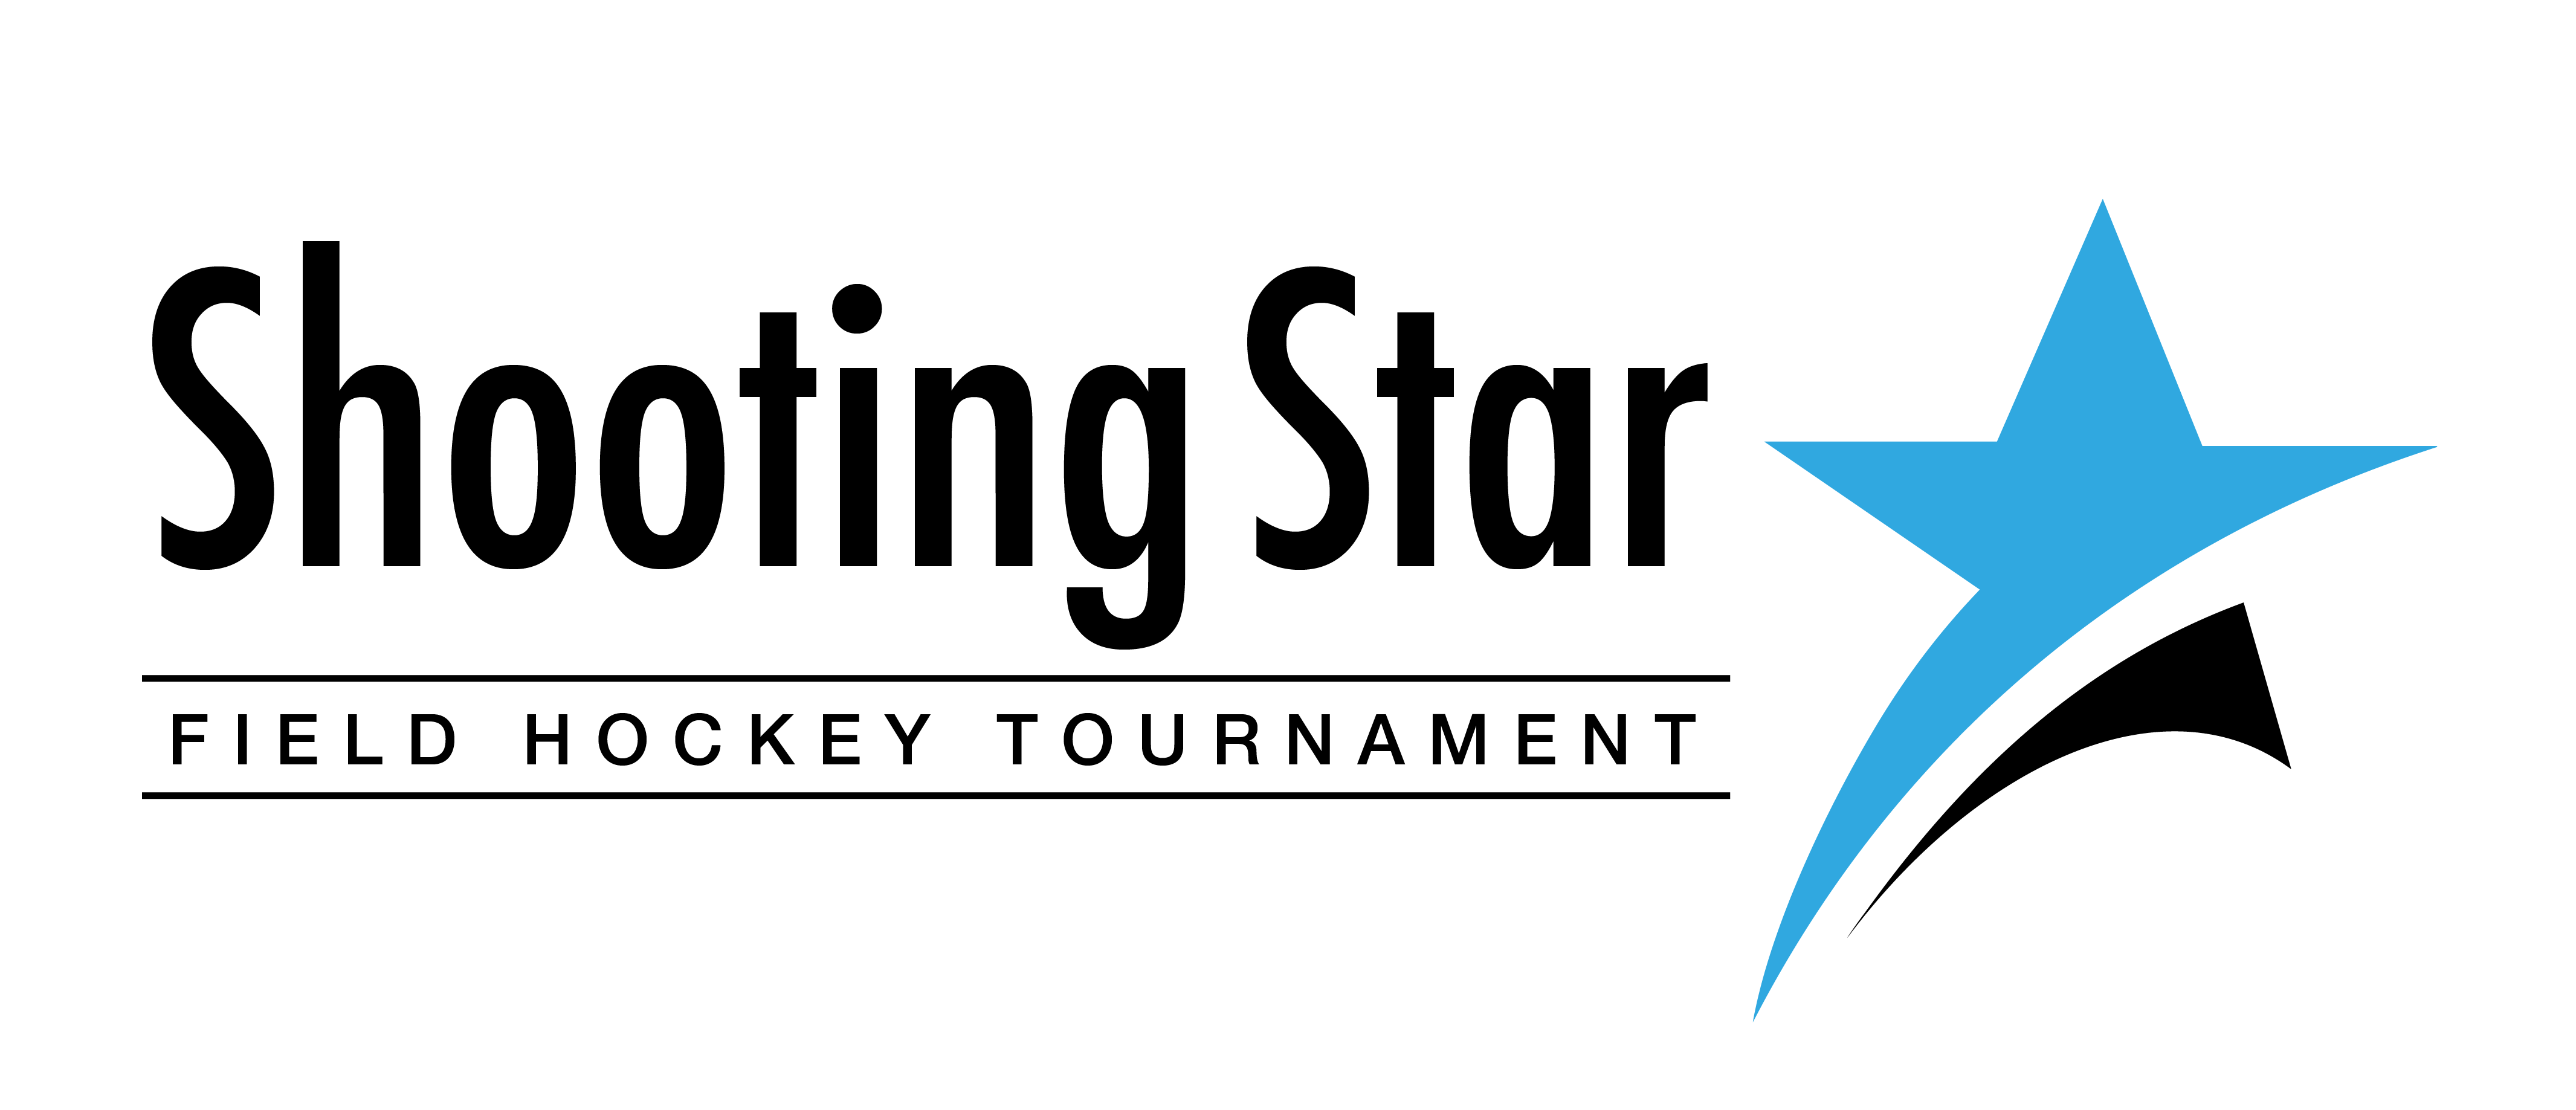 Shooting Star Logo - News